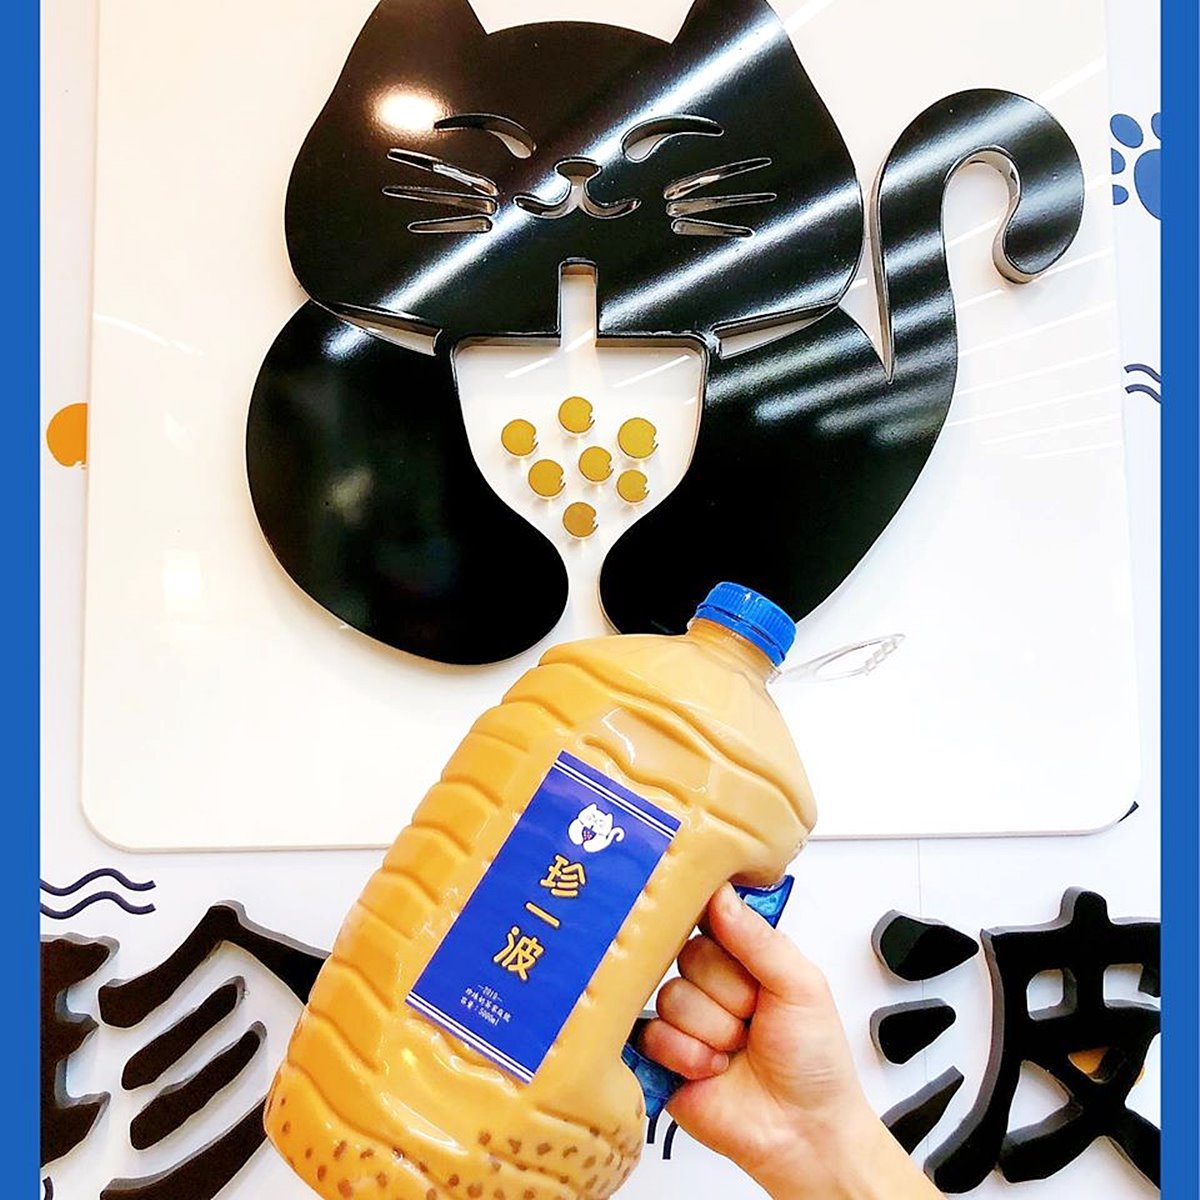 超狂「5公升珍奶」台灣喝得到！ 30分鐘喝完「家庭號珍奶」就免費